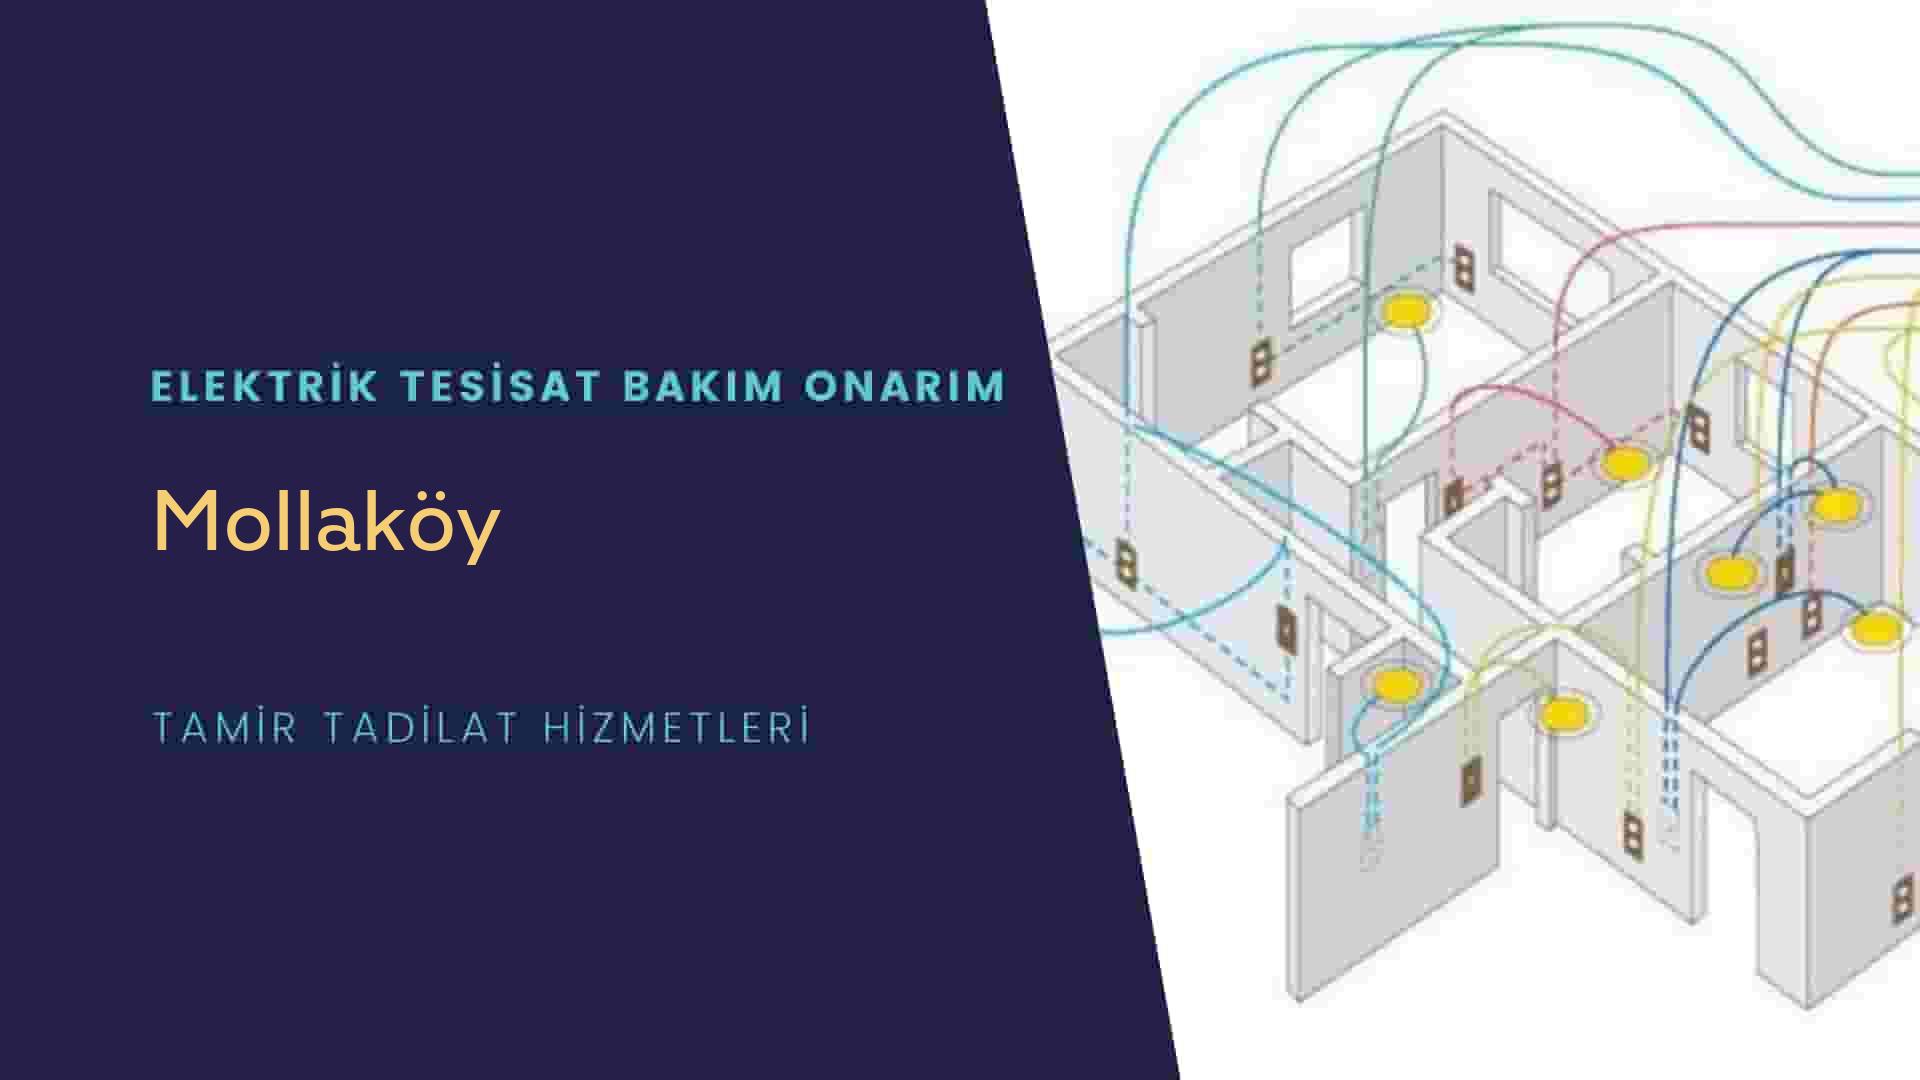 Mollaköy'de elektrik tesisatı ustalarımı arıyorsunuz doğru adrestenizi Mollaköy elektrik tesisatı ustalarımız 7/24 sizlere hizmet vermekten mutluluk duyar.